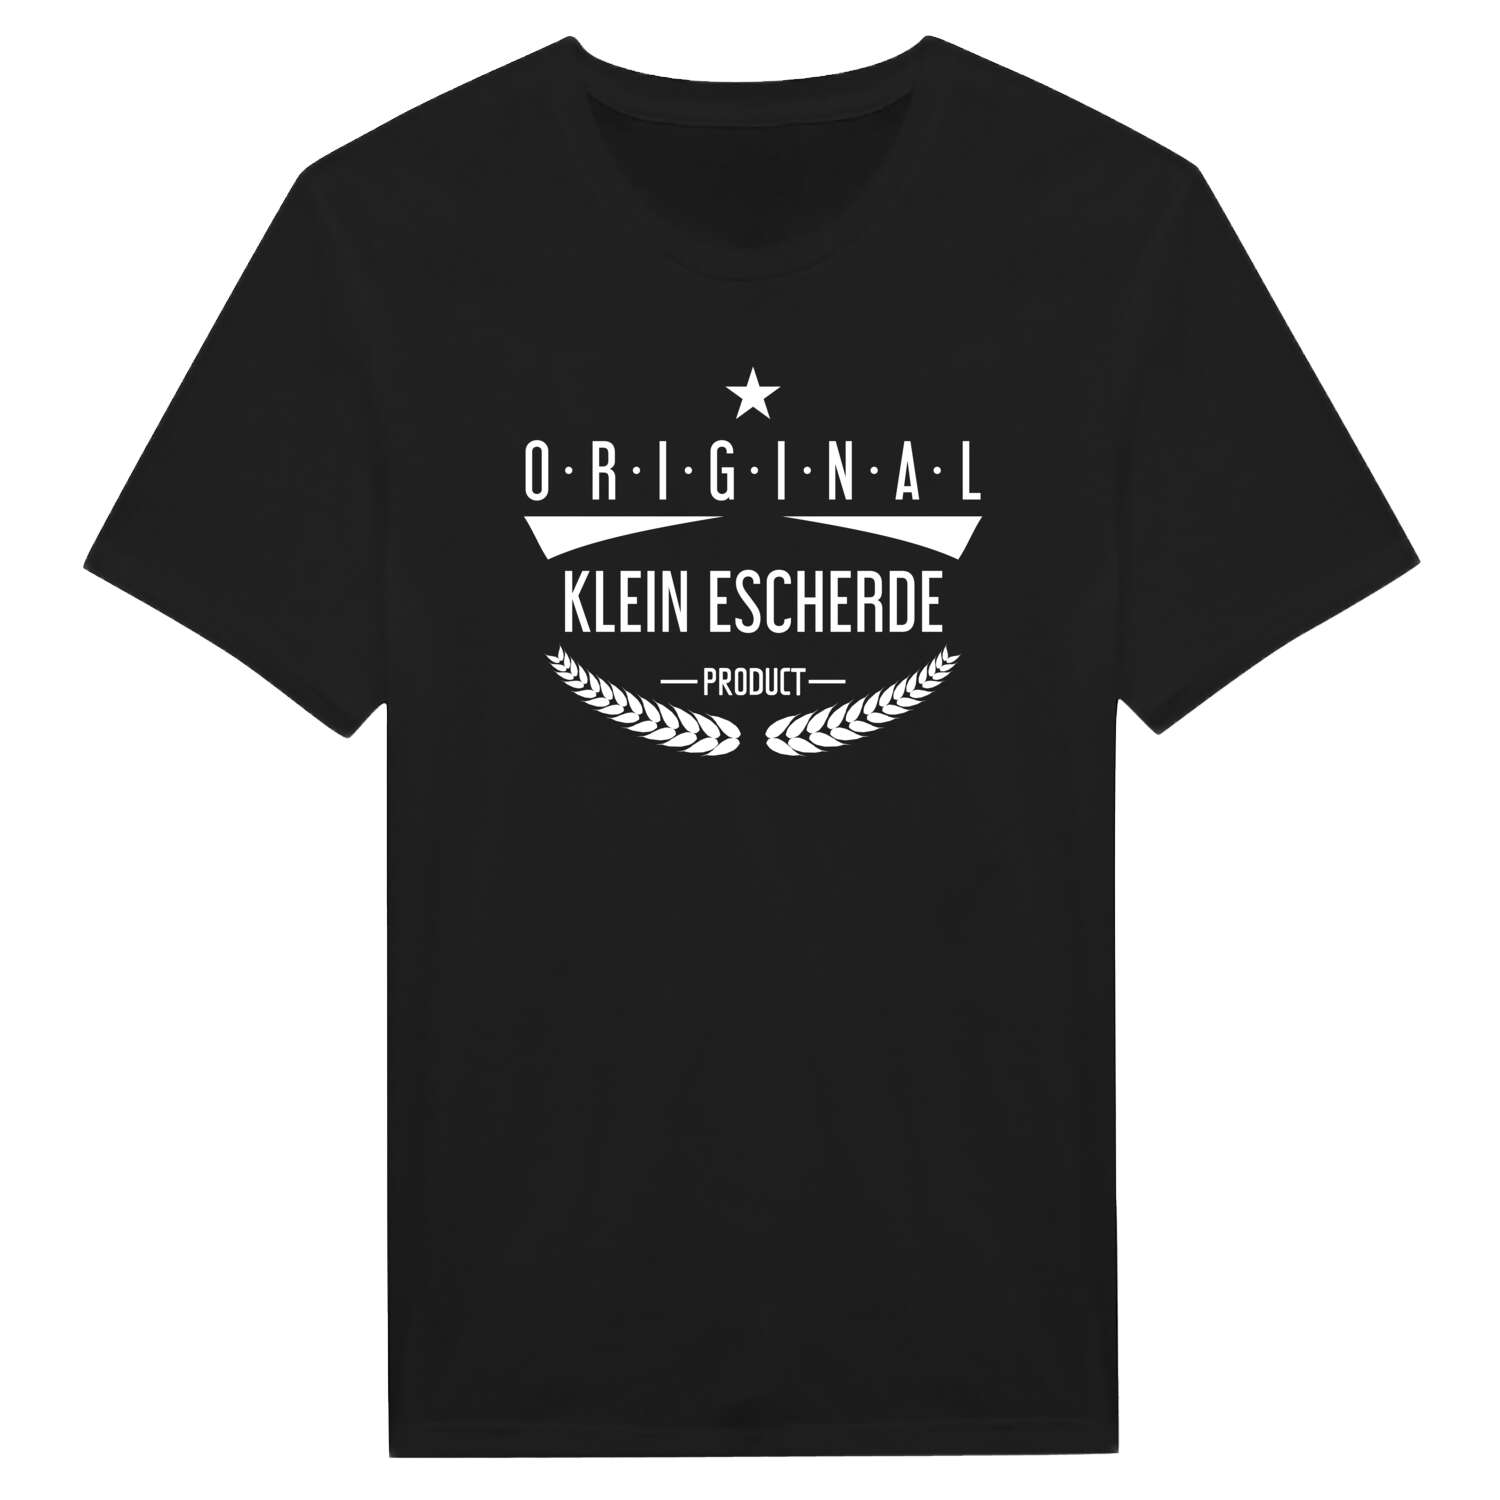 Klein Escherde T-Shirt »Original Product«